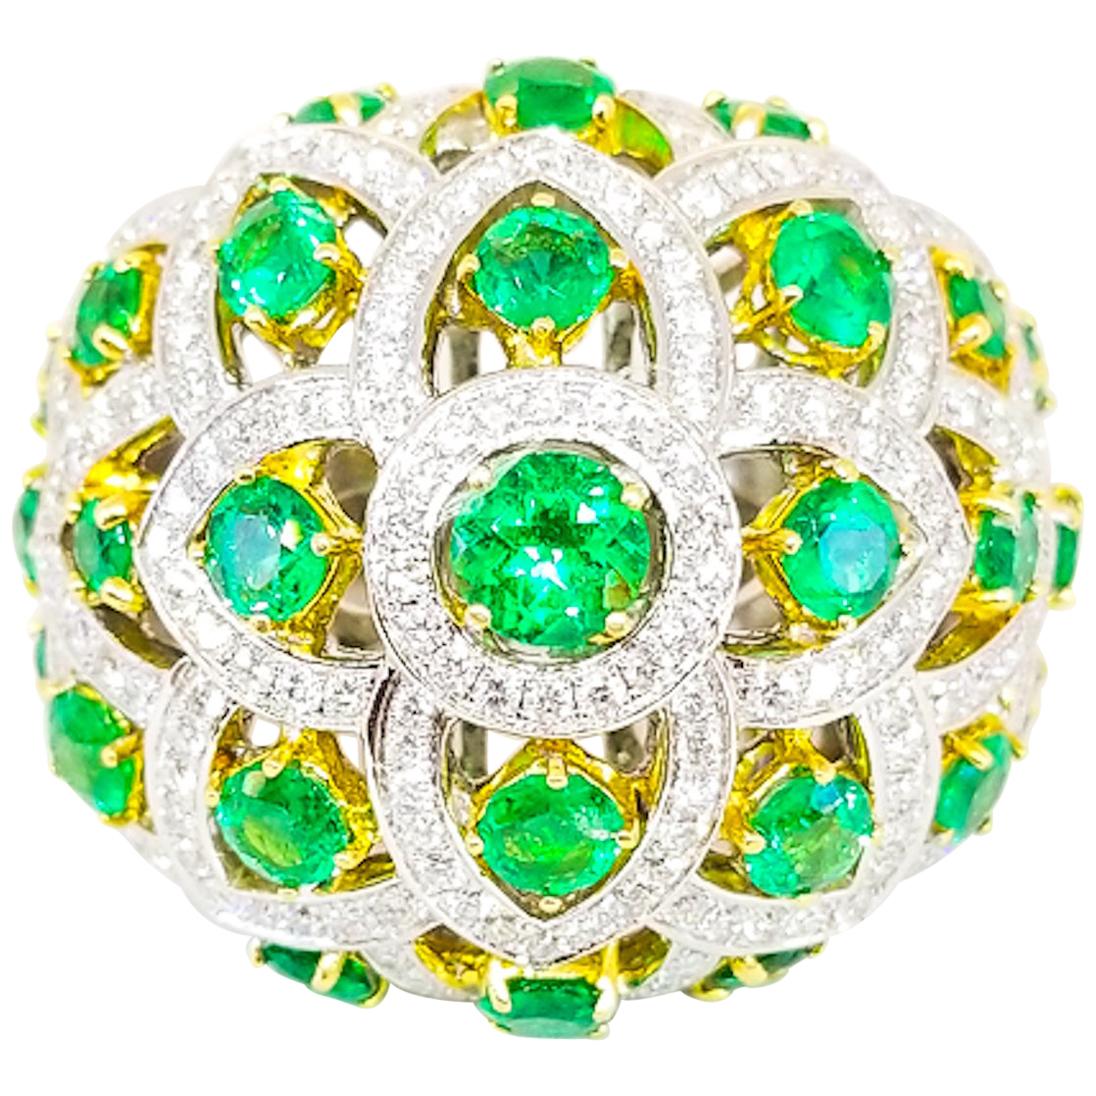 2.7 Carat Emerald and 1.8 Carat White Diamond Lotus Flower Bombe Ring 18 Karat